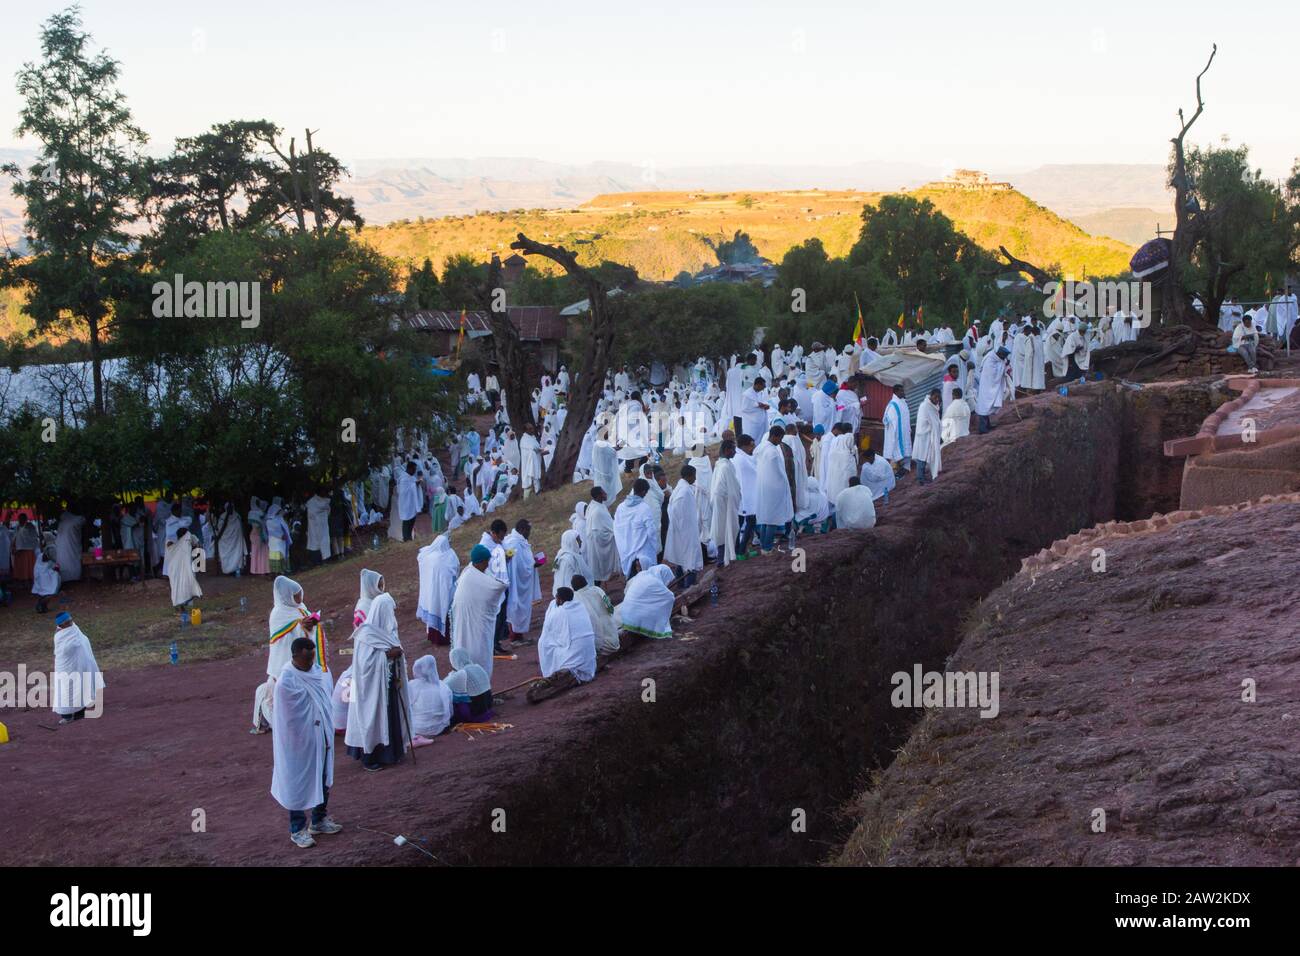 Lalibela, Etiopía - Nov 2018: Peregrinos vestidos con colores blancos tradicionales etíopes reunidos fuera de las iglesias subterráneas de Lalibela. Foto de stock